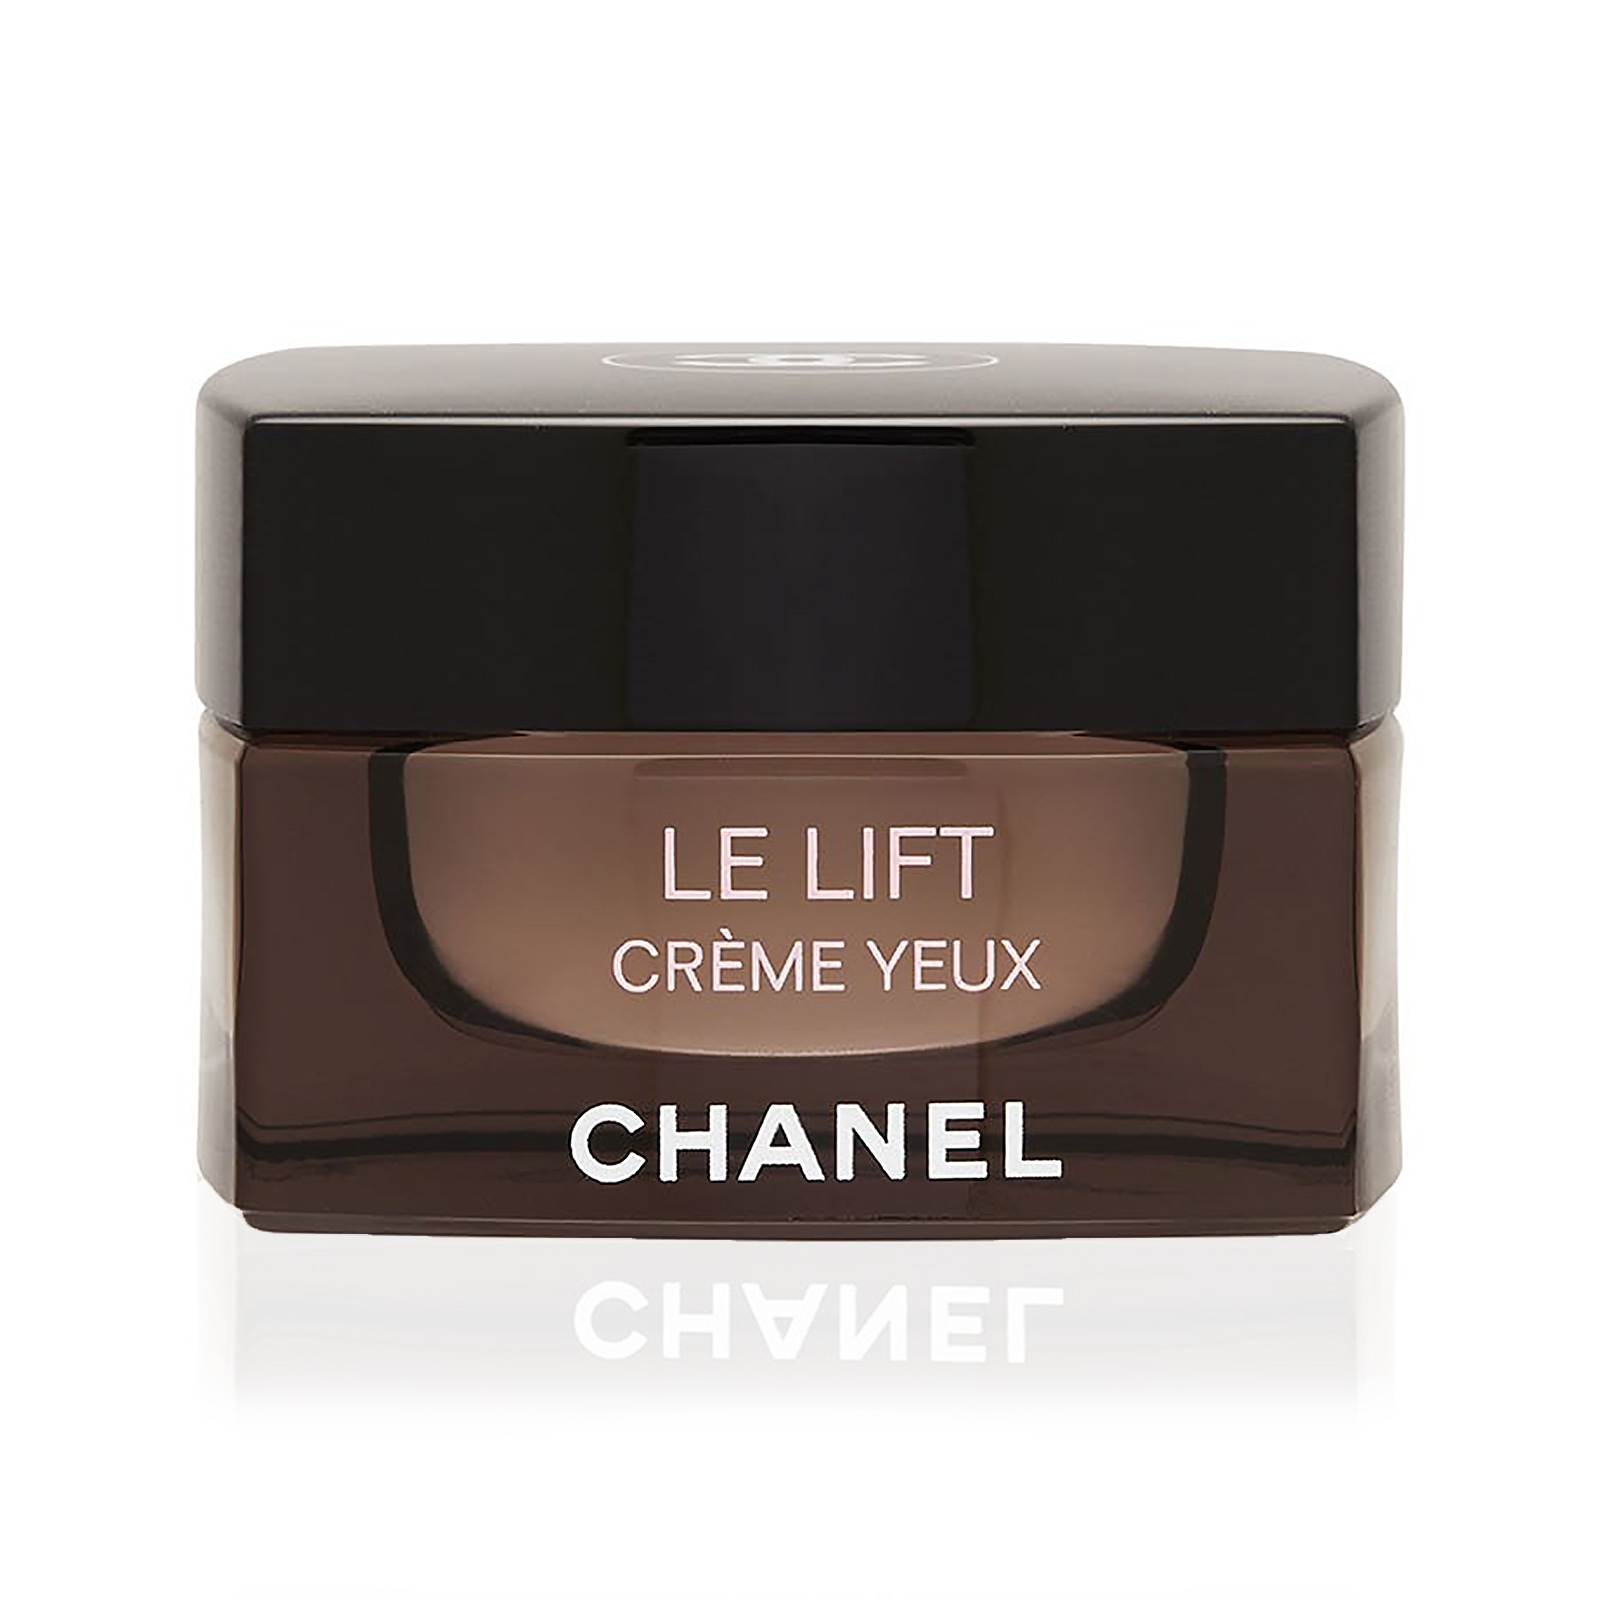 CHANEL Le Lift Creme Yeux - Le Lift Eye Creme - Reviews